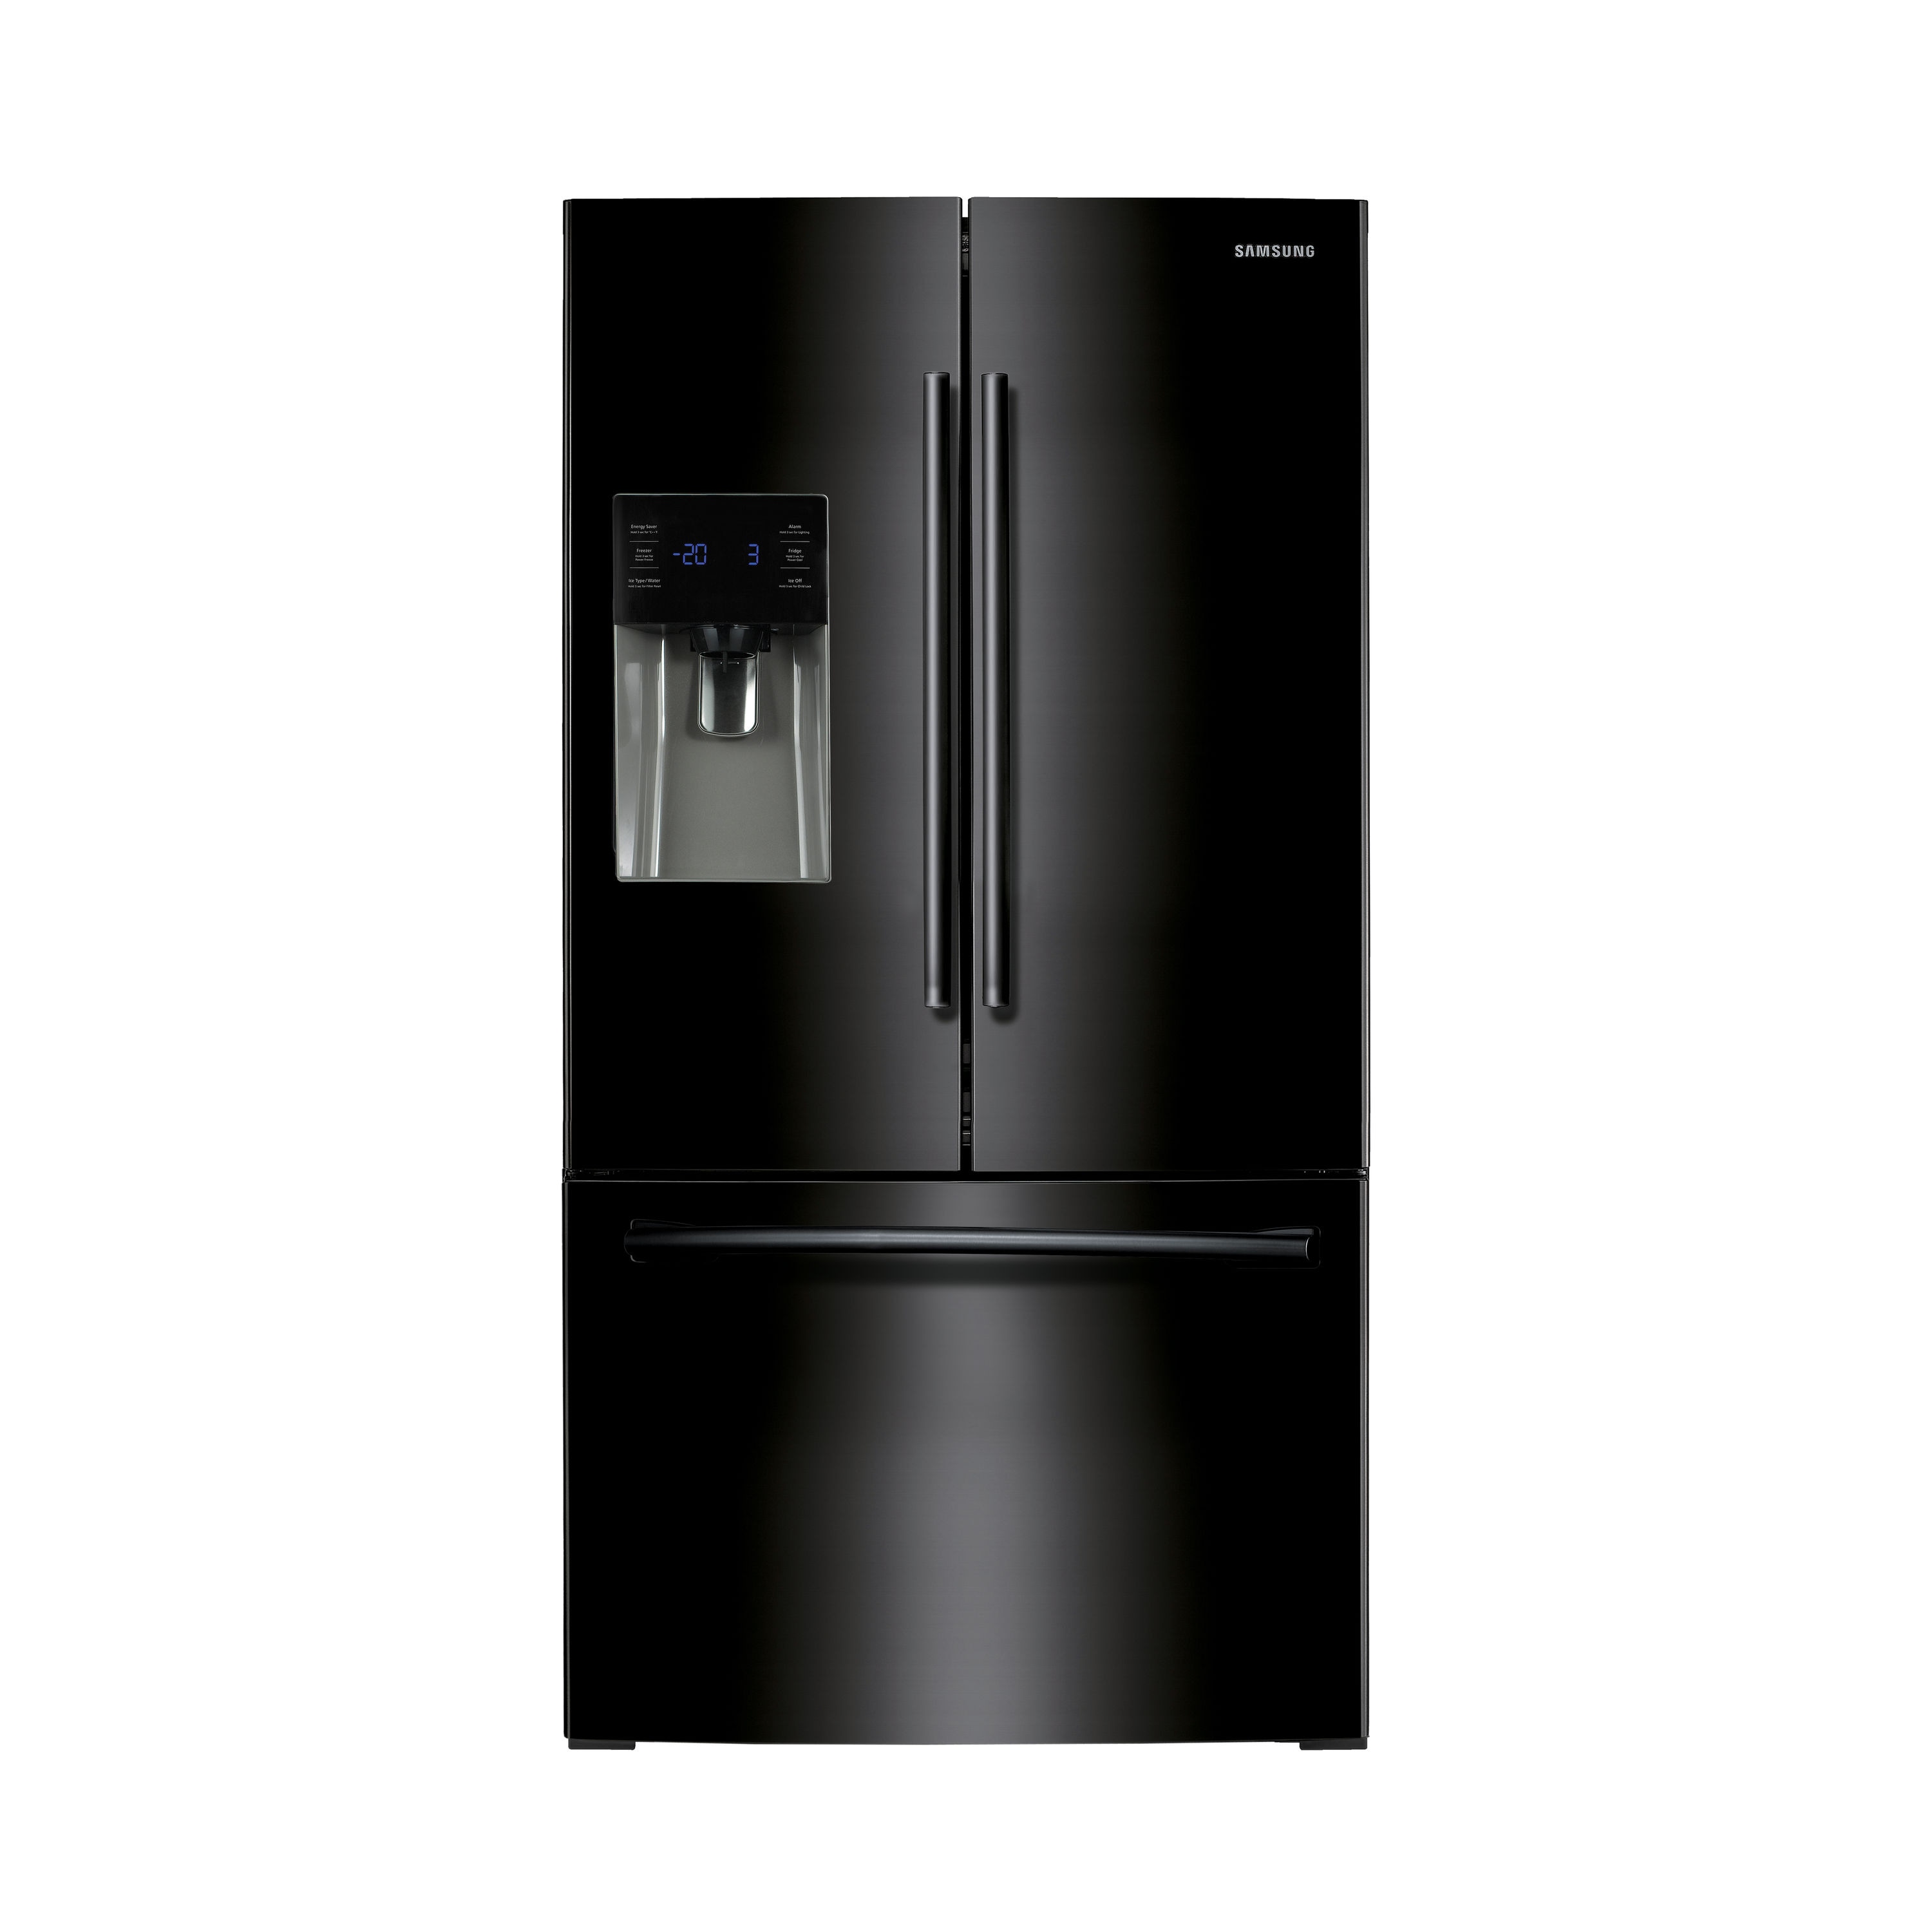 Samsung 24.6 cu. ft. French Door Refrigerator with Thru-the-Door